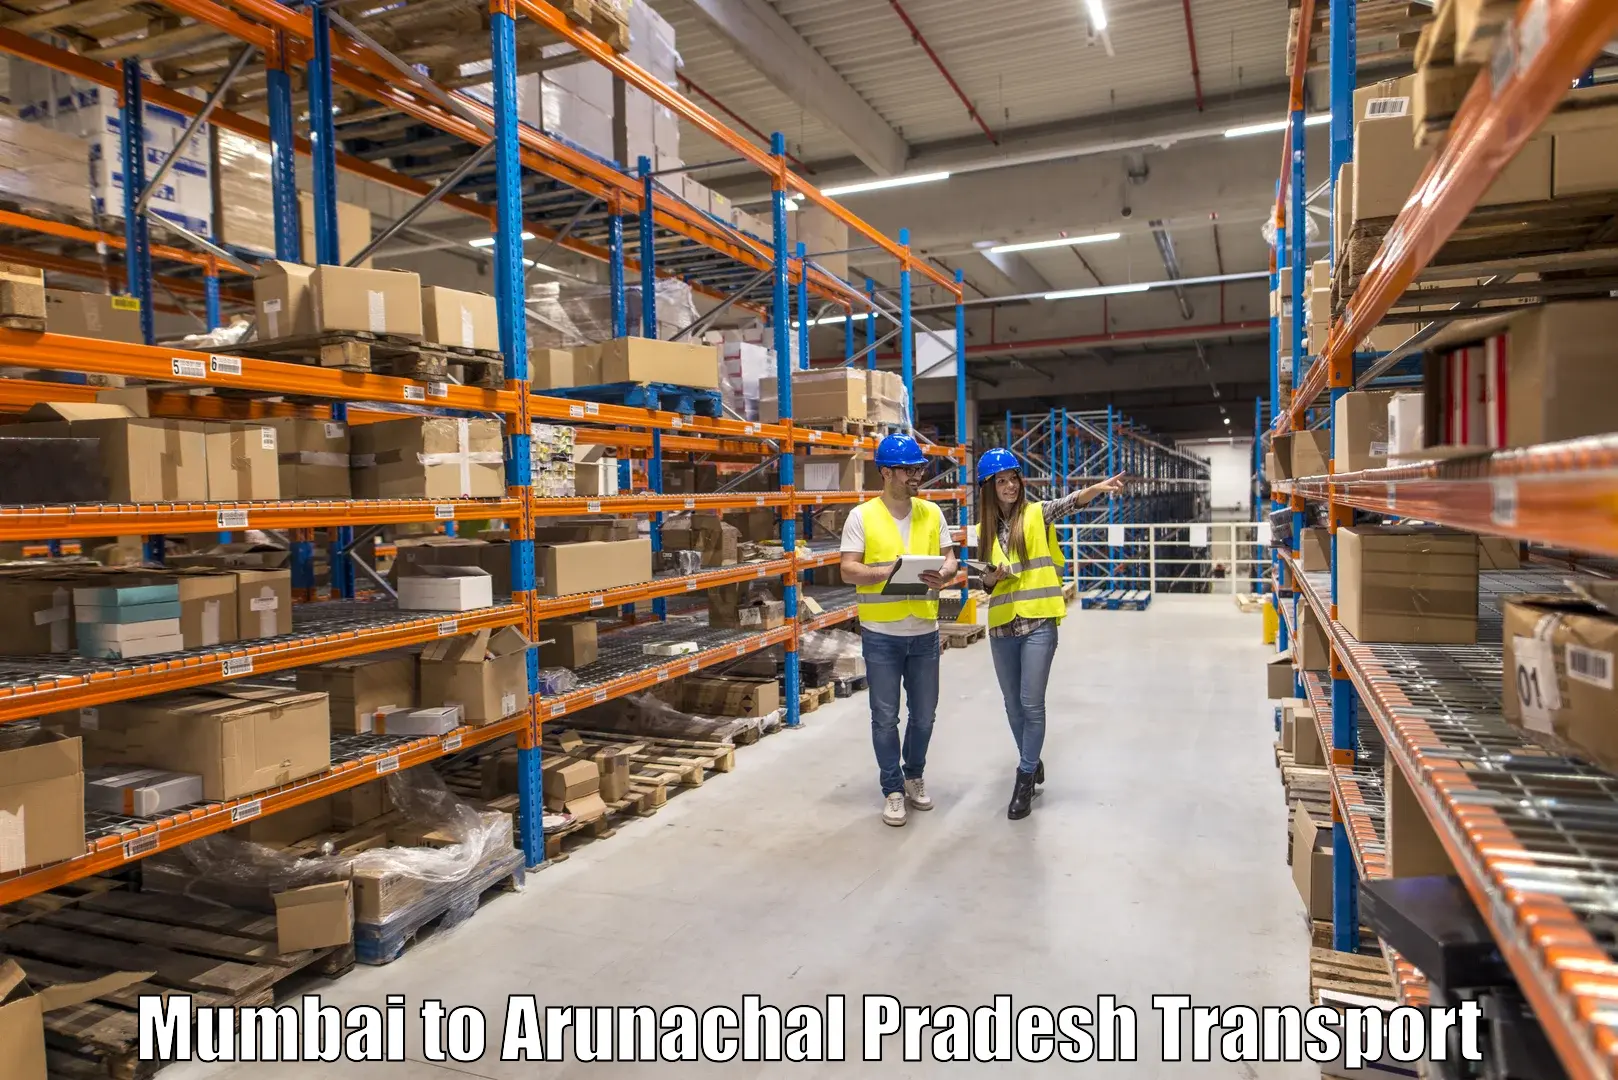 Transportation services Mumbai to Arunachal Pradesh